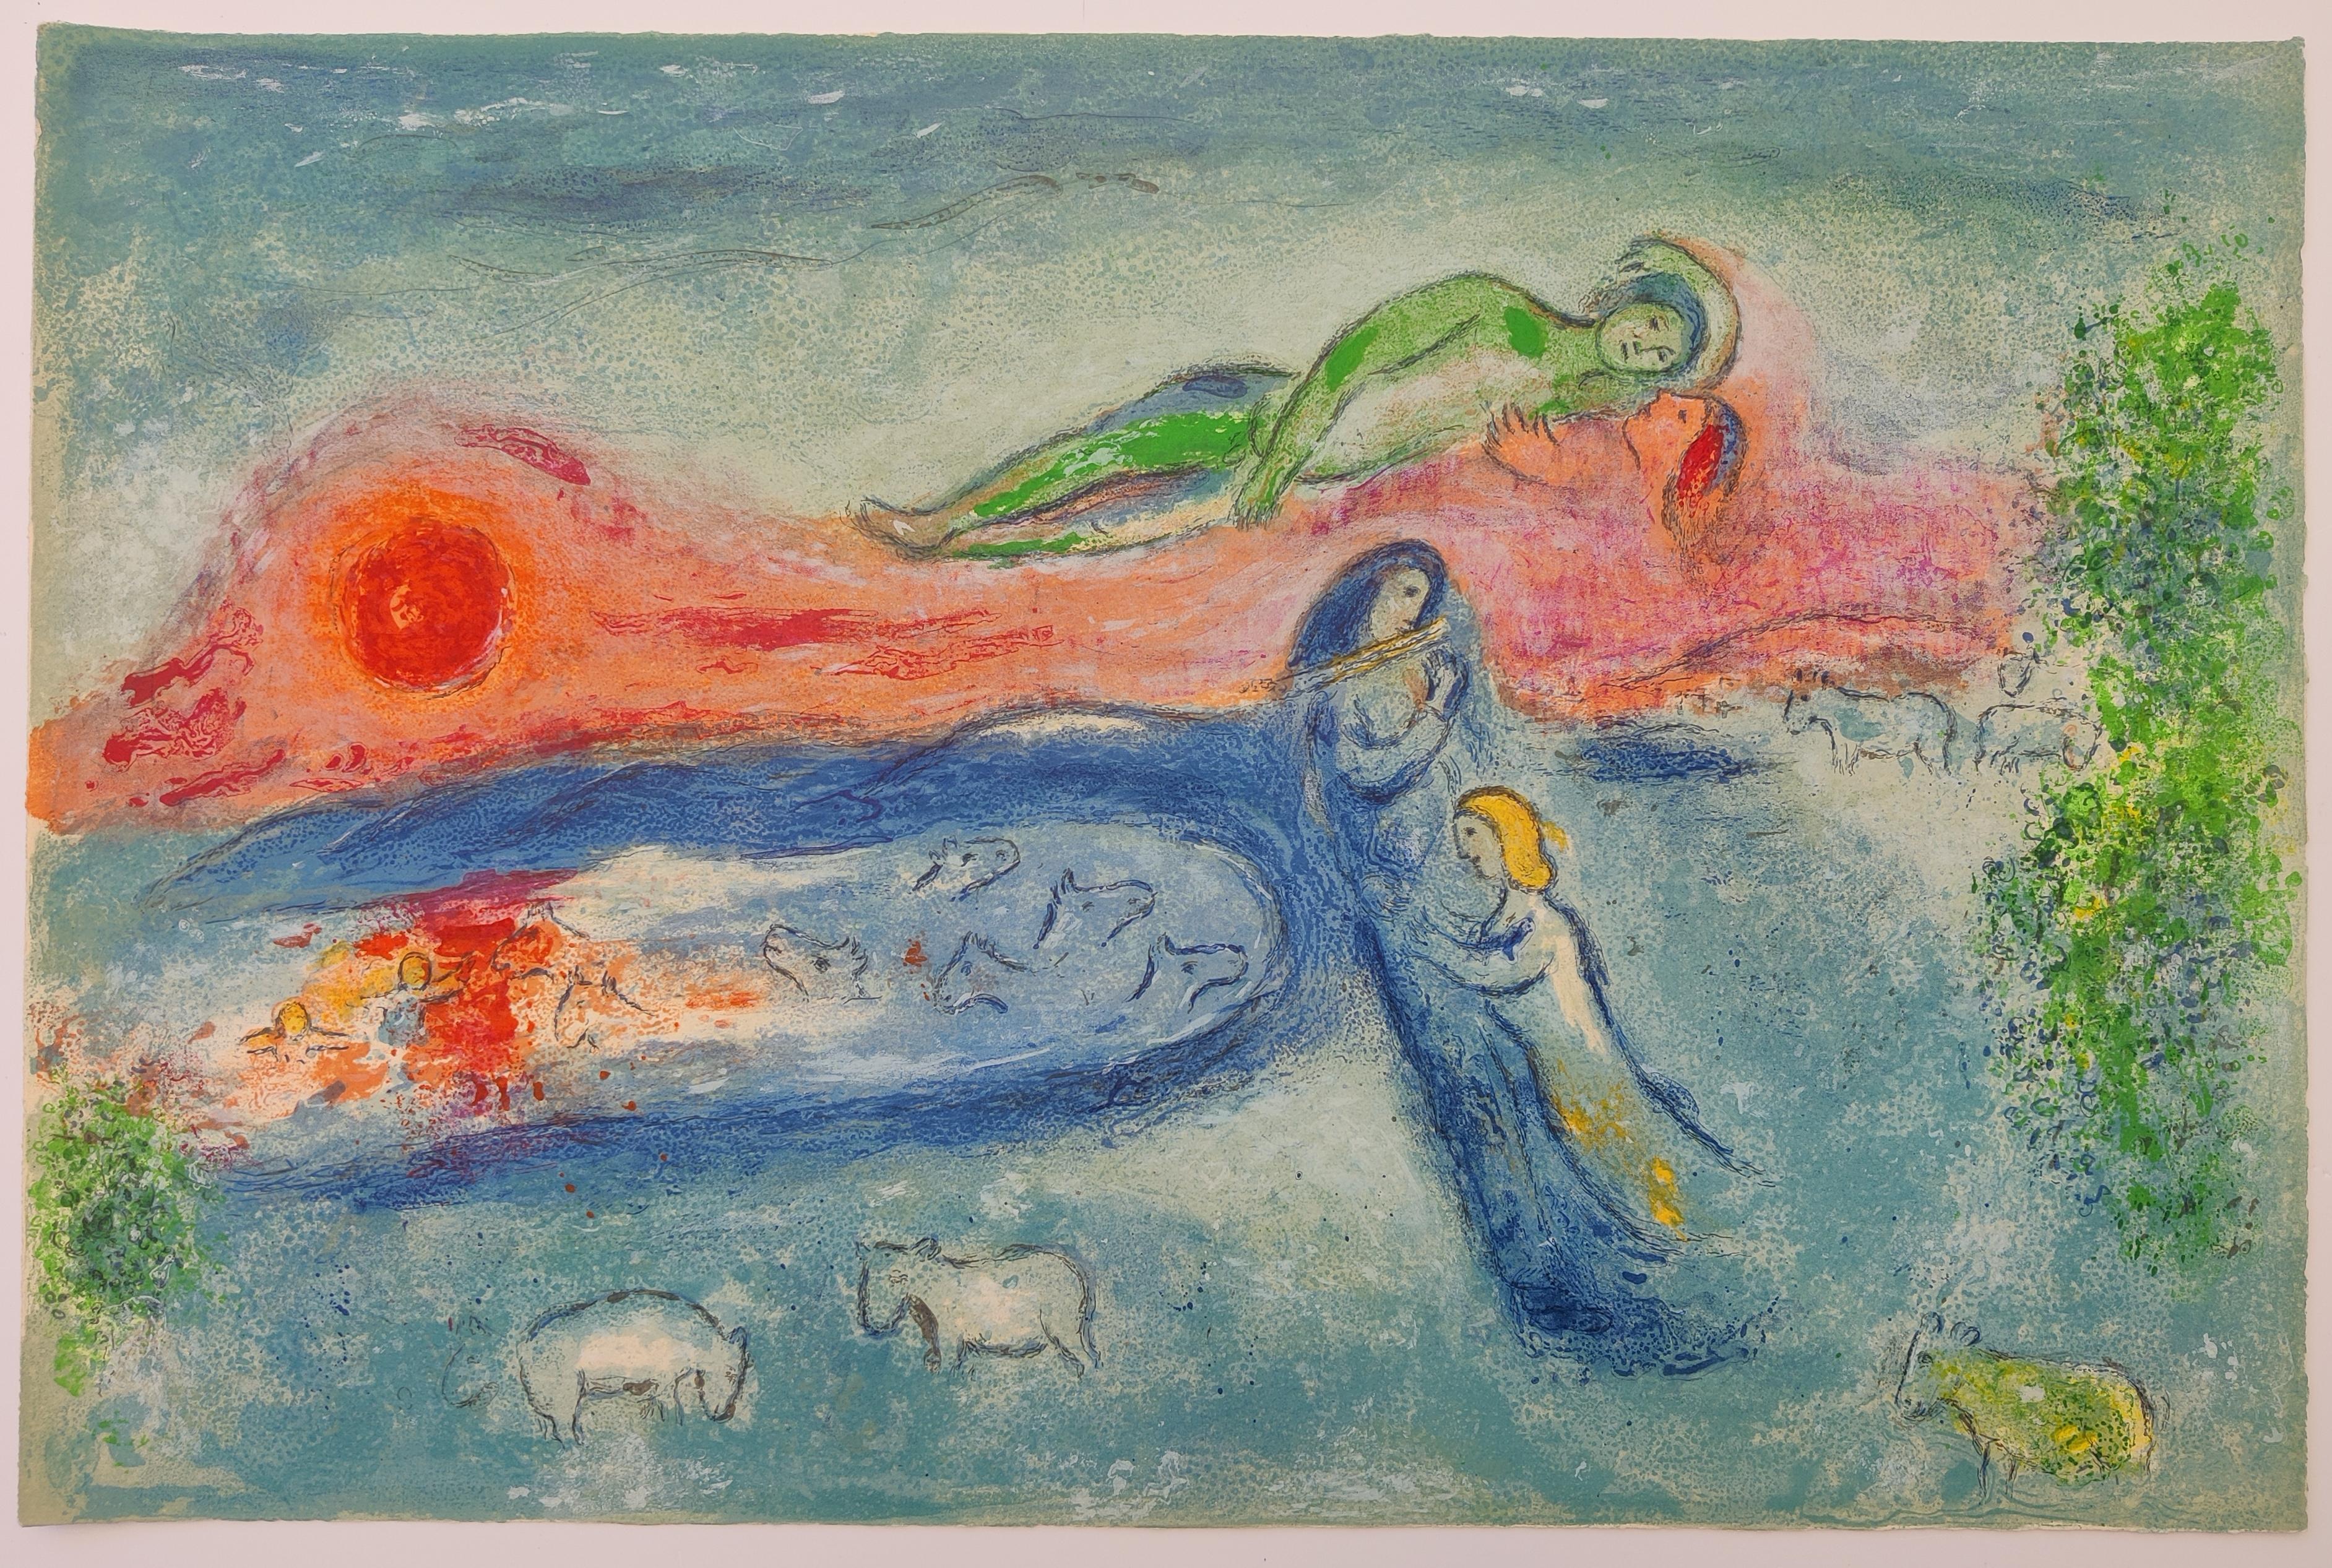 Marc Chagall
Der Tod von Dorcon, aus Chagalls Suite Daphnis und Chloé,  1961
Blattgröße: 42 x 64 cm
Vorzeichenlos
Aus der Buchausgabe von 250 Stück (es gibt auch eine signierte und nummerierte Ausgabe von 60 Stück), auf Arches-Waffelpapier
Gedruckt